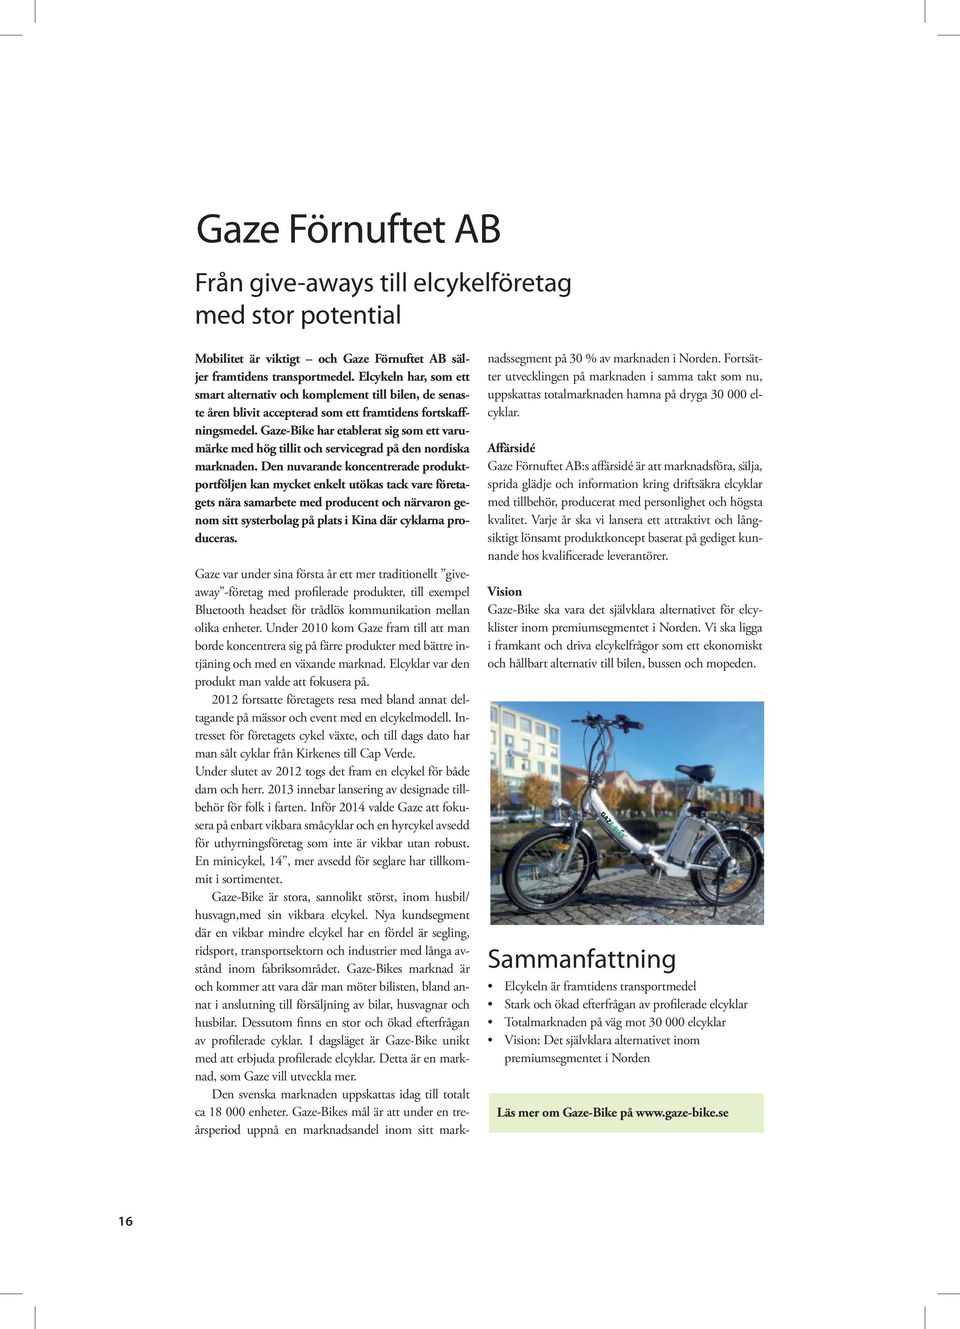 Gaze-Bike har etablerat sig som ett varumärke med hög tillit och servicegrad på den nordiska marknaden.